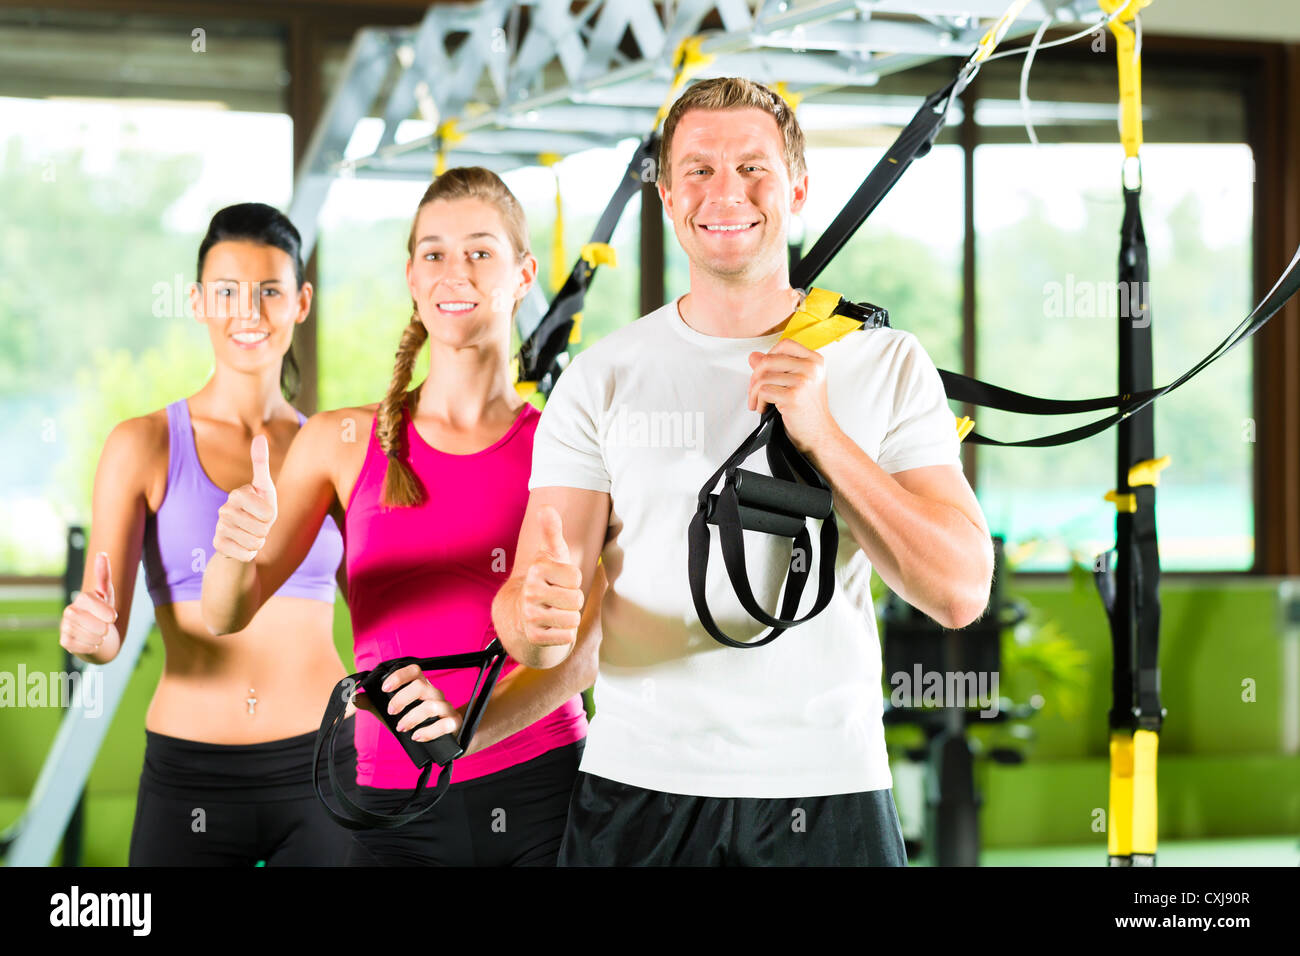 Gruppe von Menschen trainieren mit Schlingentrainer oder trainer di sospensione in Fitnessstudio Foto Stock